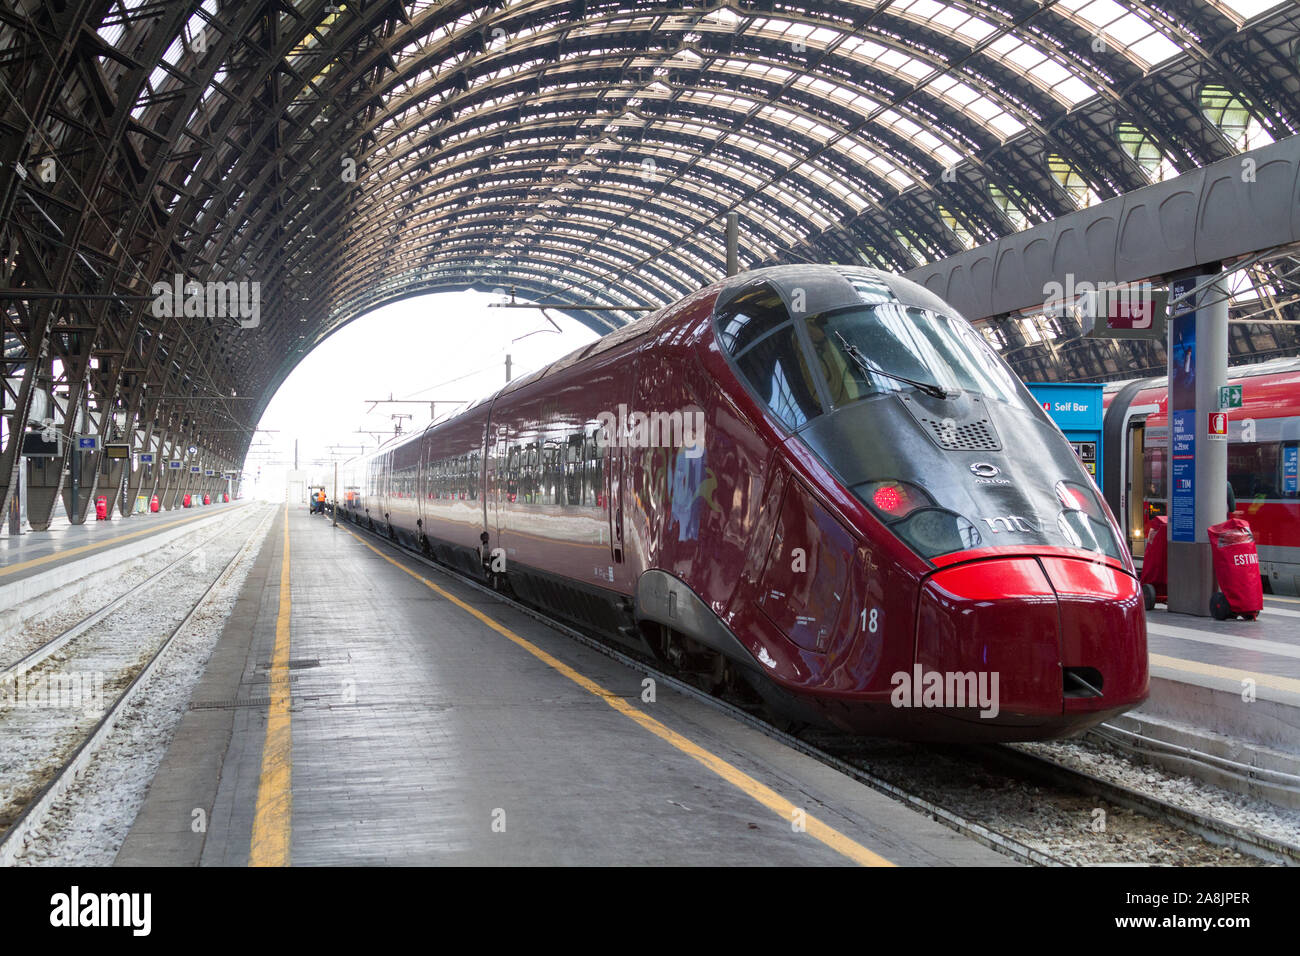 "Frecciarossa', una alta velocità ferroviaria italiana, in bilico presso la Stazione Centrale di Milano, un importante nodo ferroviario del Nord Italia. Foto Stock